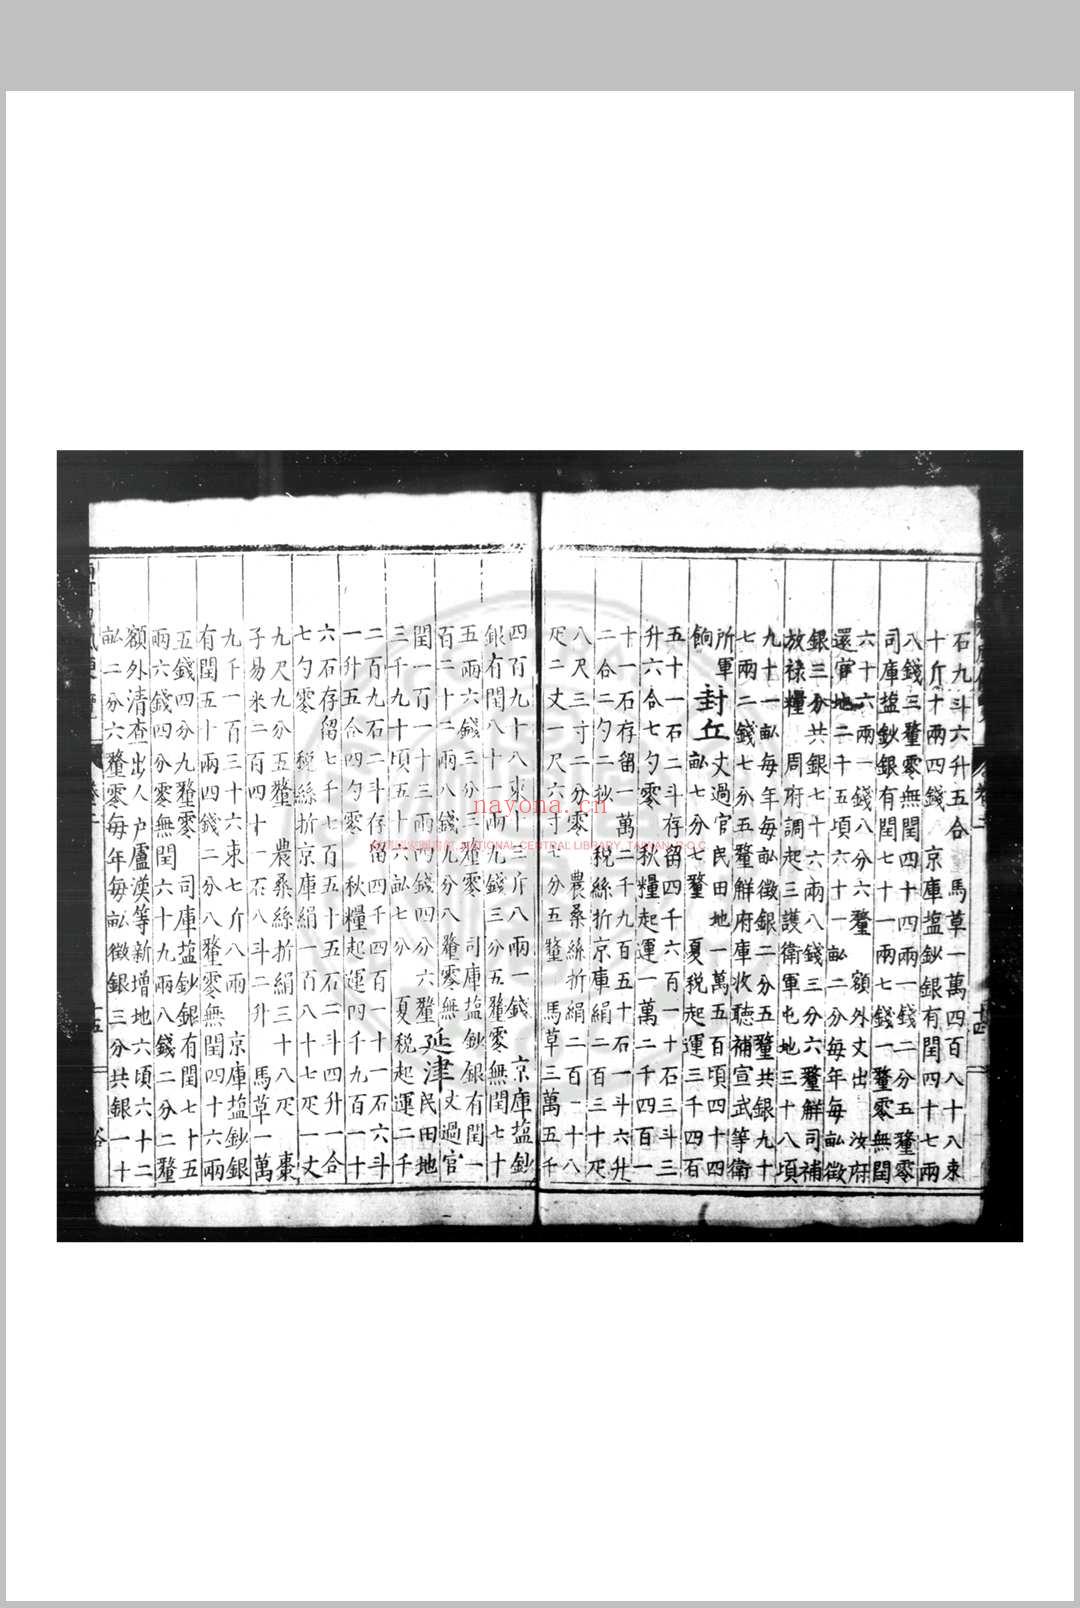 两河观风便览 (明)不着撰人 明万历间(1573-1620)刊本